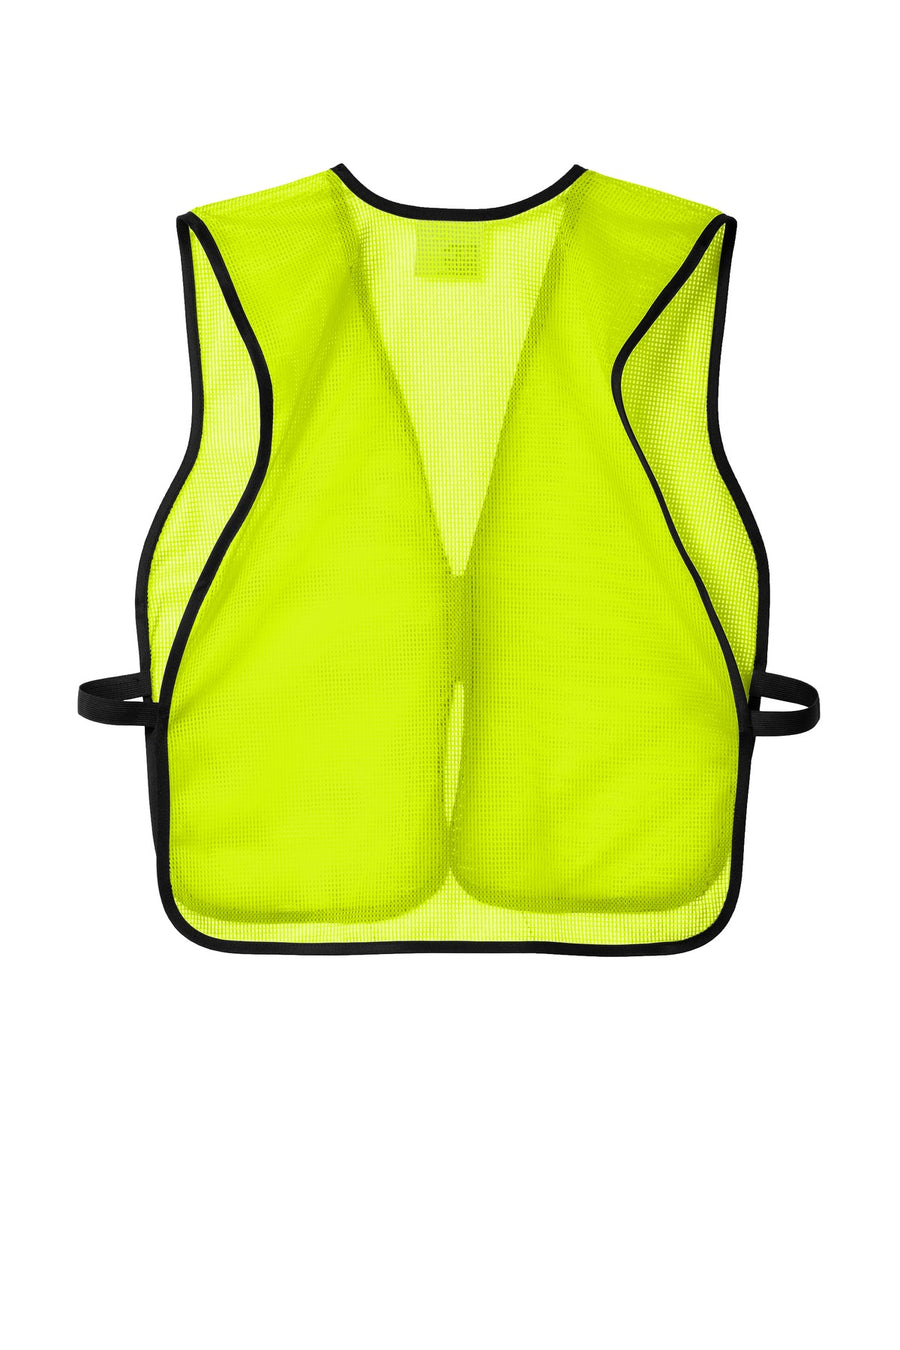 CSV01-Safety Yellow-back_flat